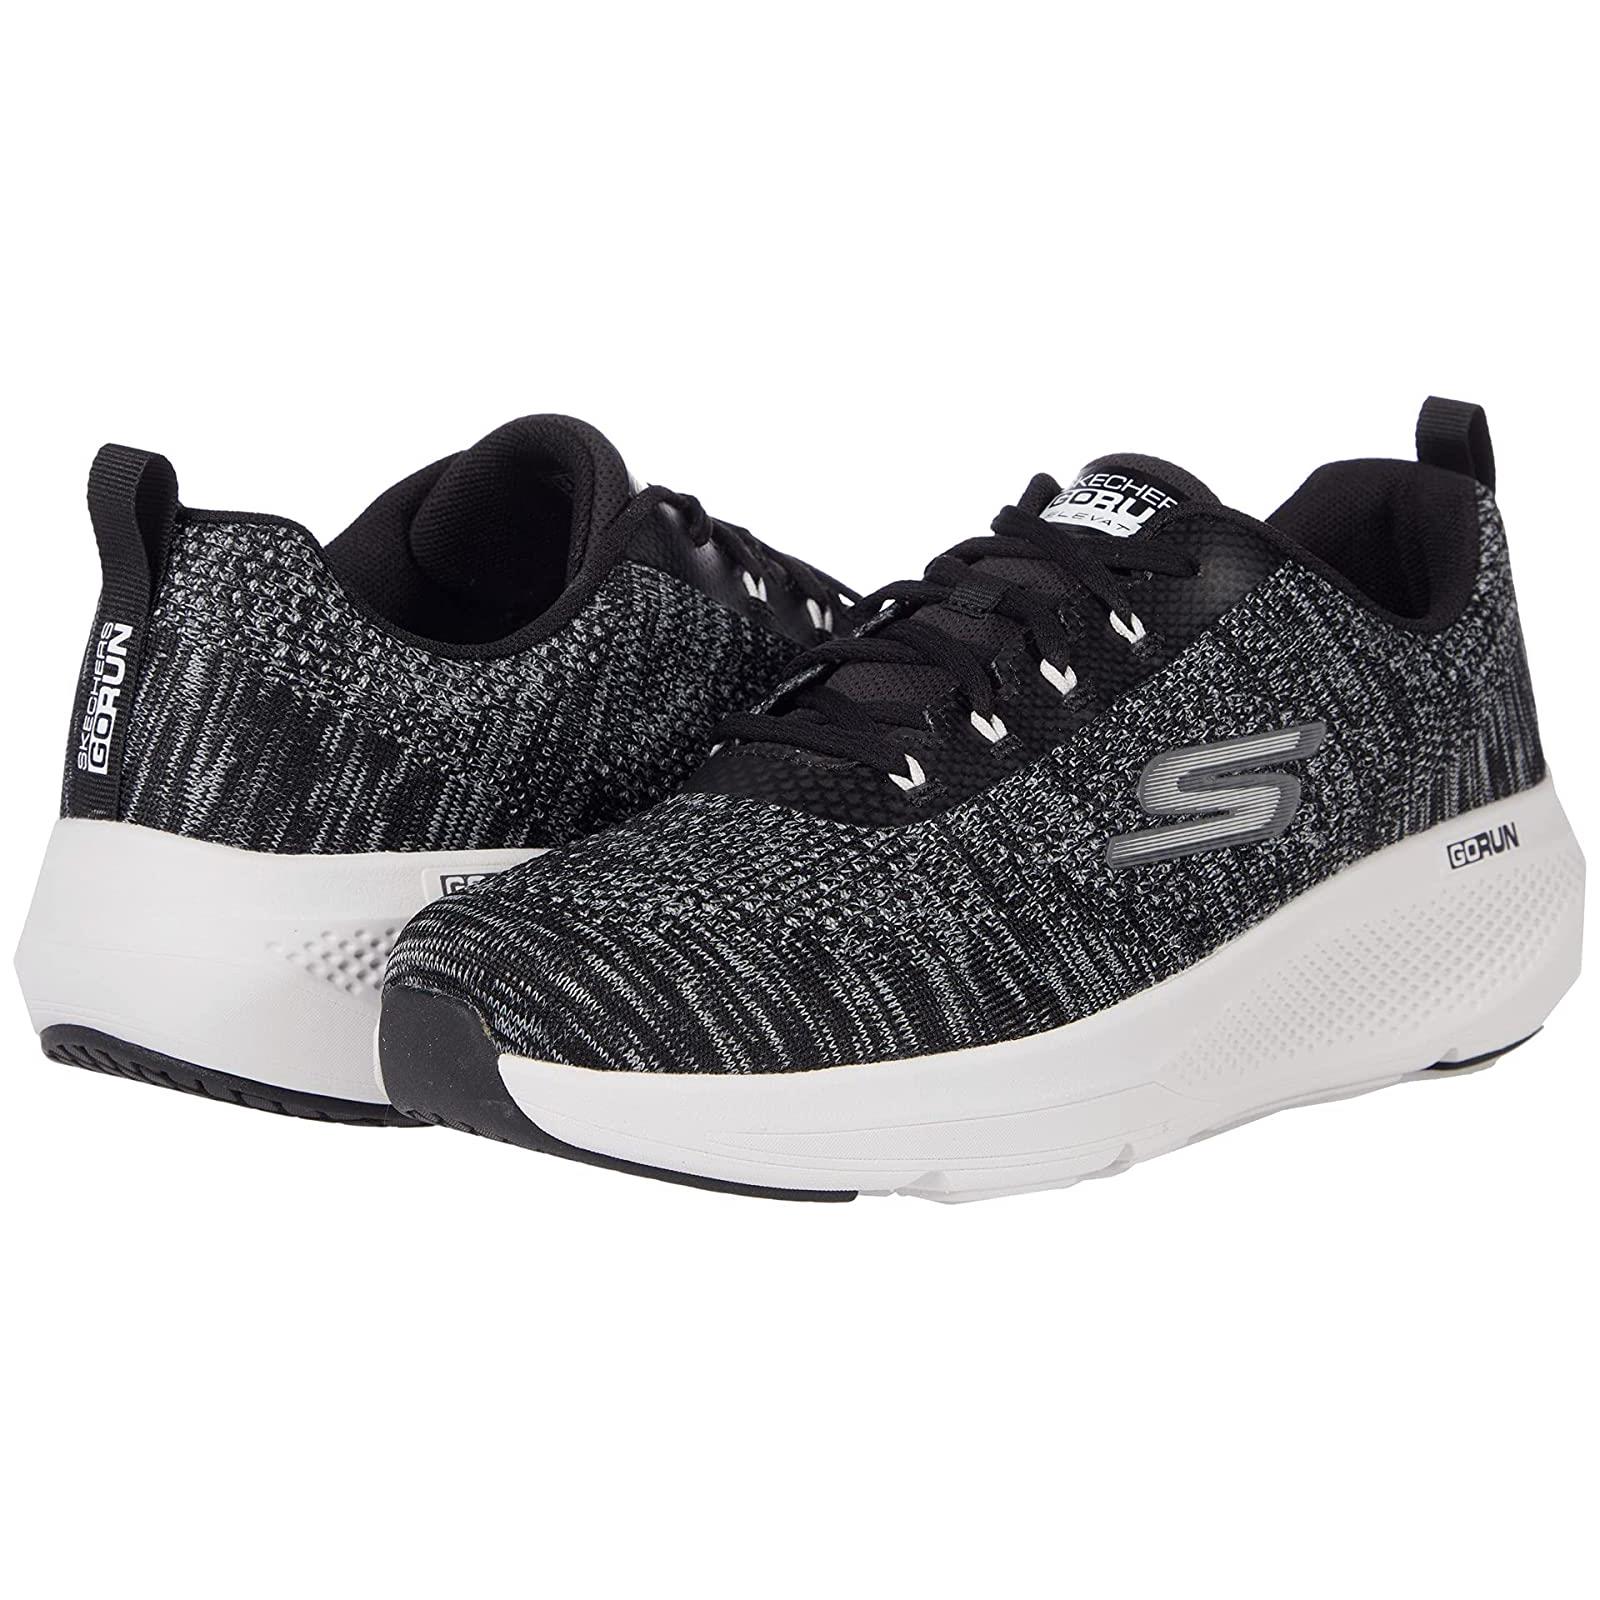 Man`s Sneakers Athletic Shoes Skechers Go Run Elevate - 220187 Black/Grey